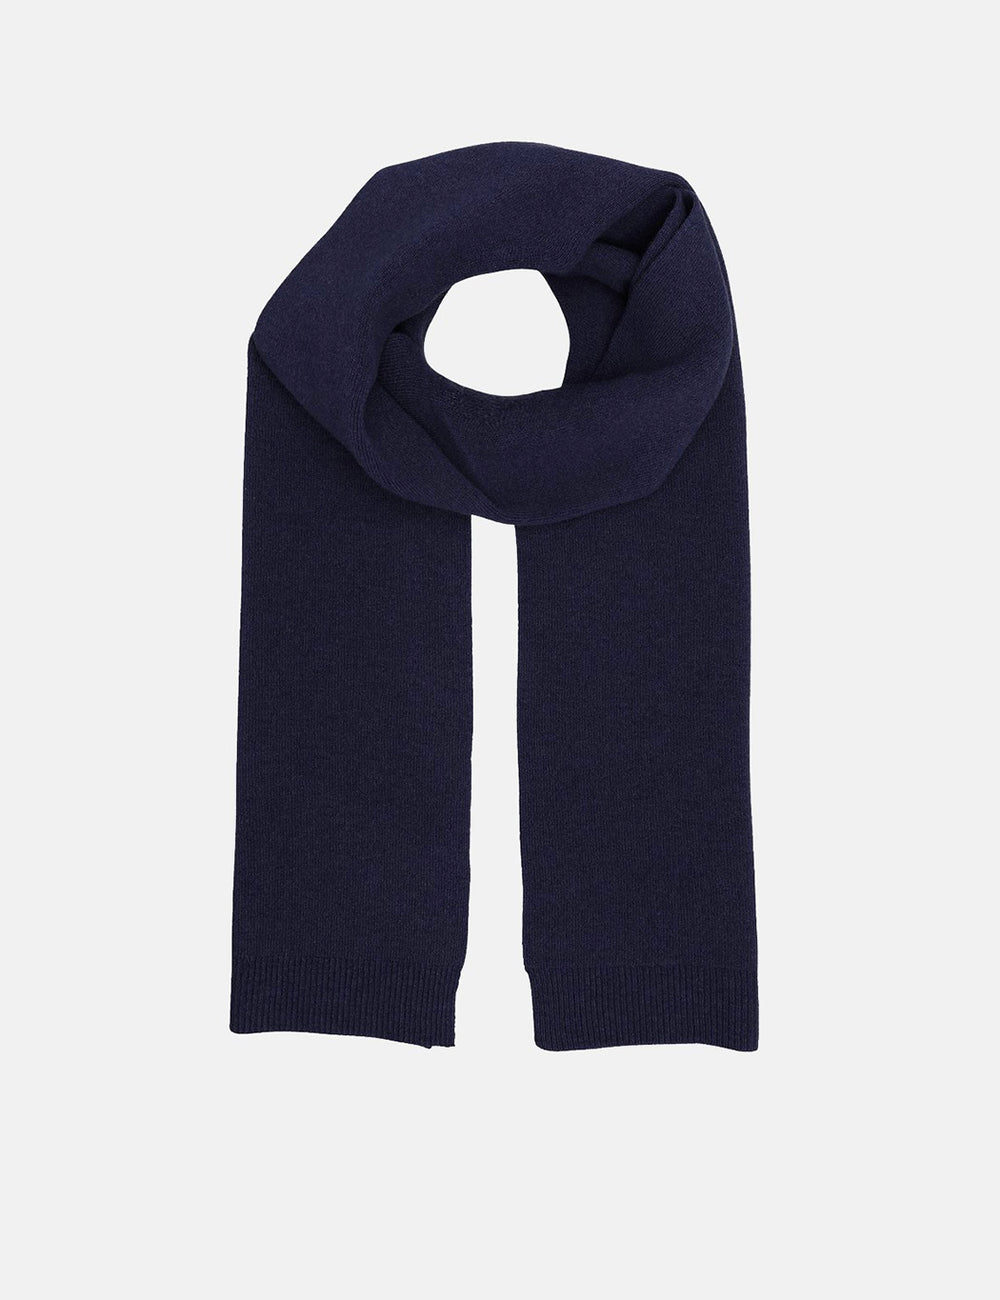 Farbenfroher Standard Schal aus Merinowolle - Marineblau | URBAN EXCES –  URBAN EXCESS